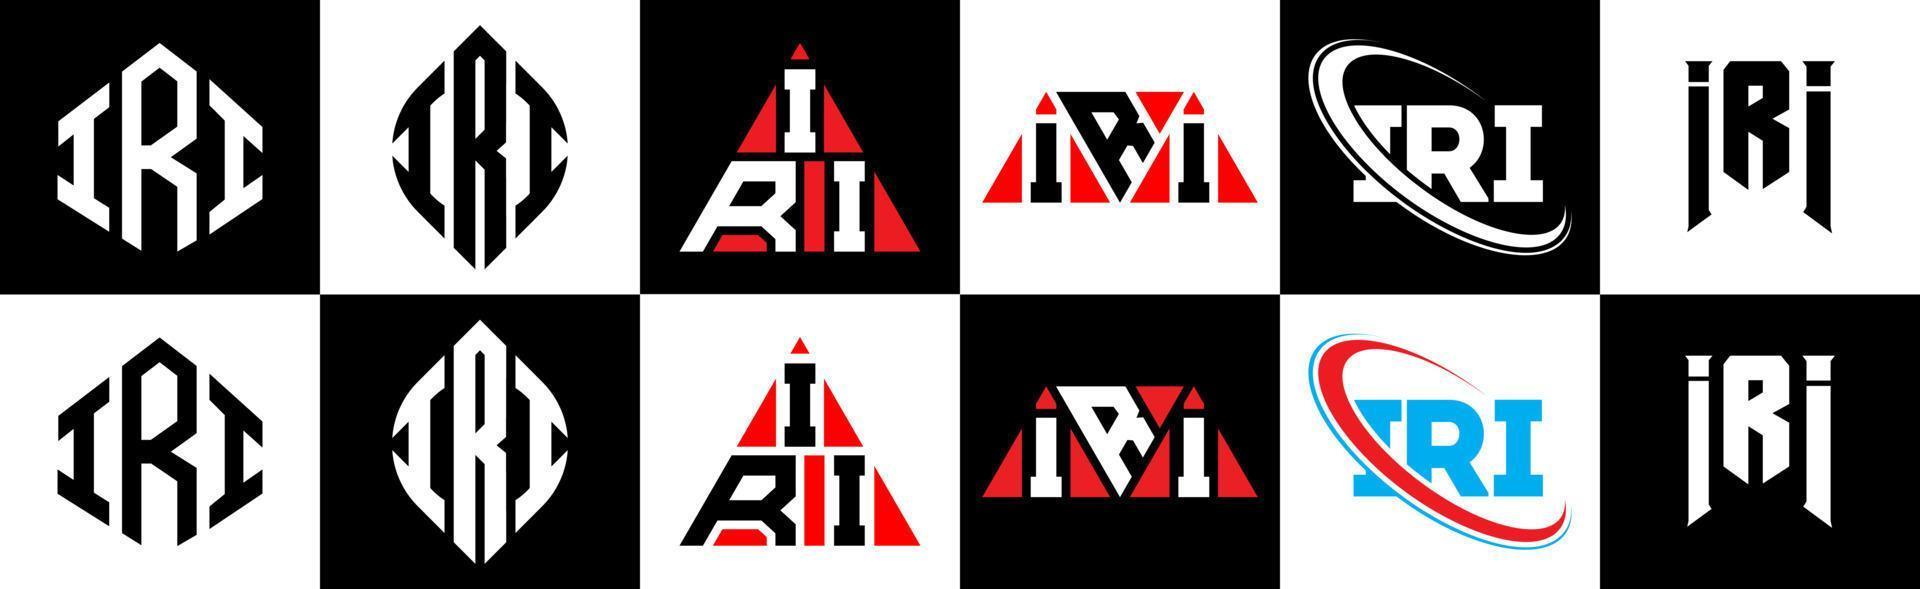 iri-Buchstaben-Logo-Design in sechs Stilen. Iri-Polygon, Kreis, Dreieck, Sechseck, flacher und einfacher Stil mit schwarz-weißem Buchstabenlogo in einer Zeichenfläche. iri minimalistisches und klassisches Logo vektor